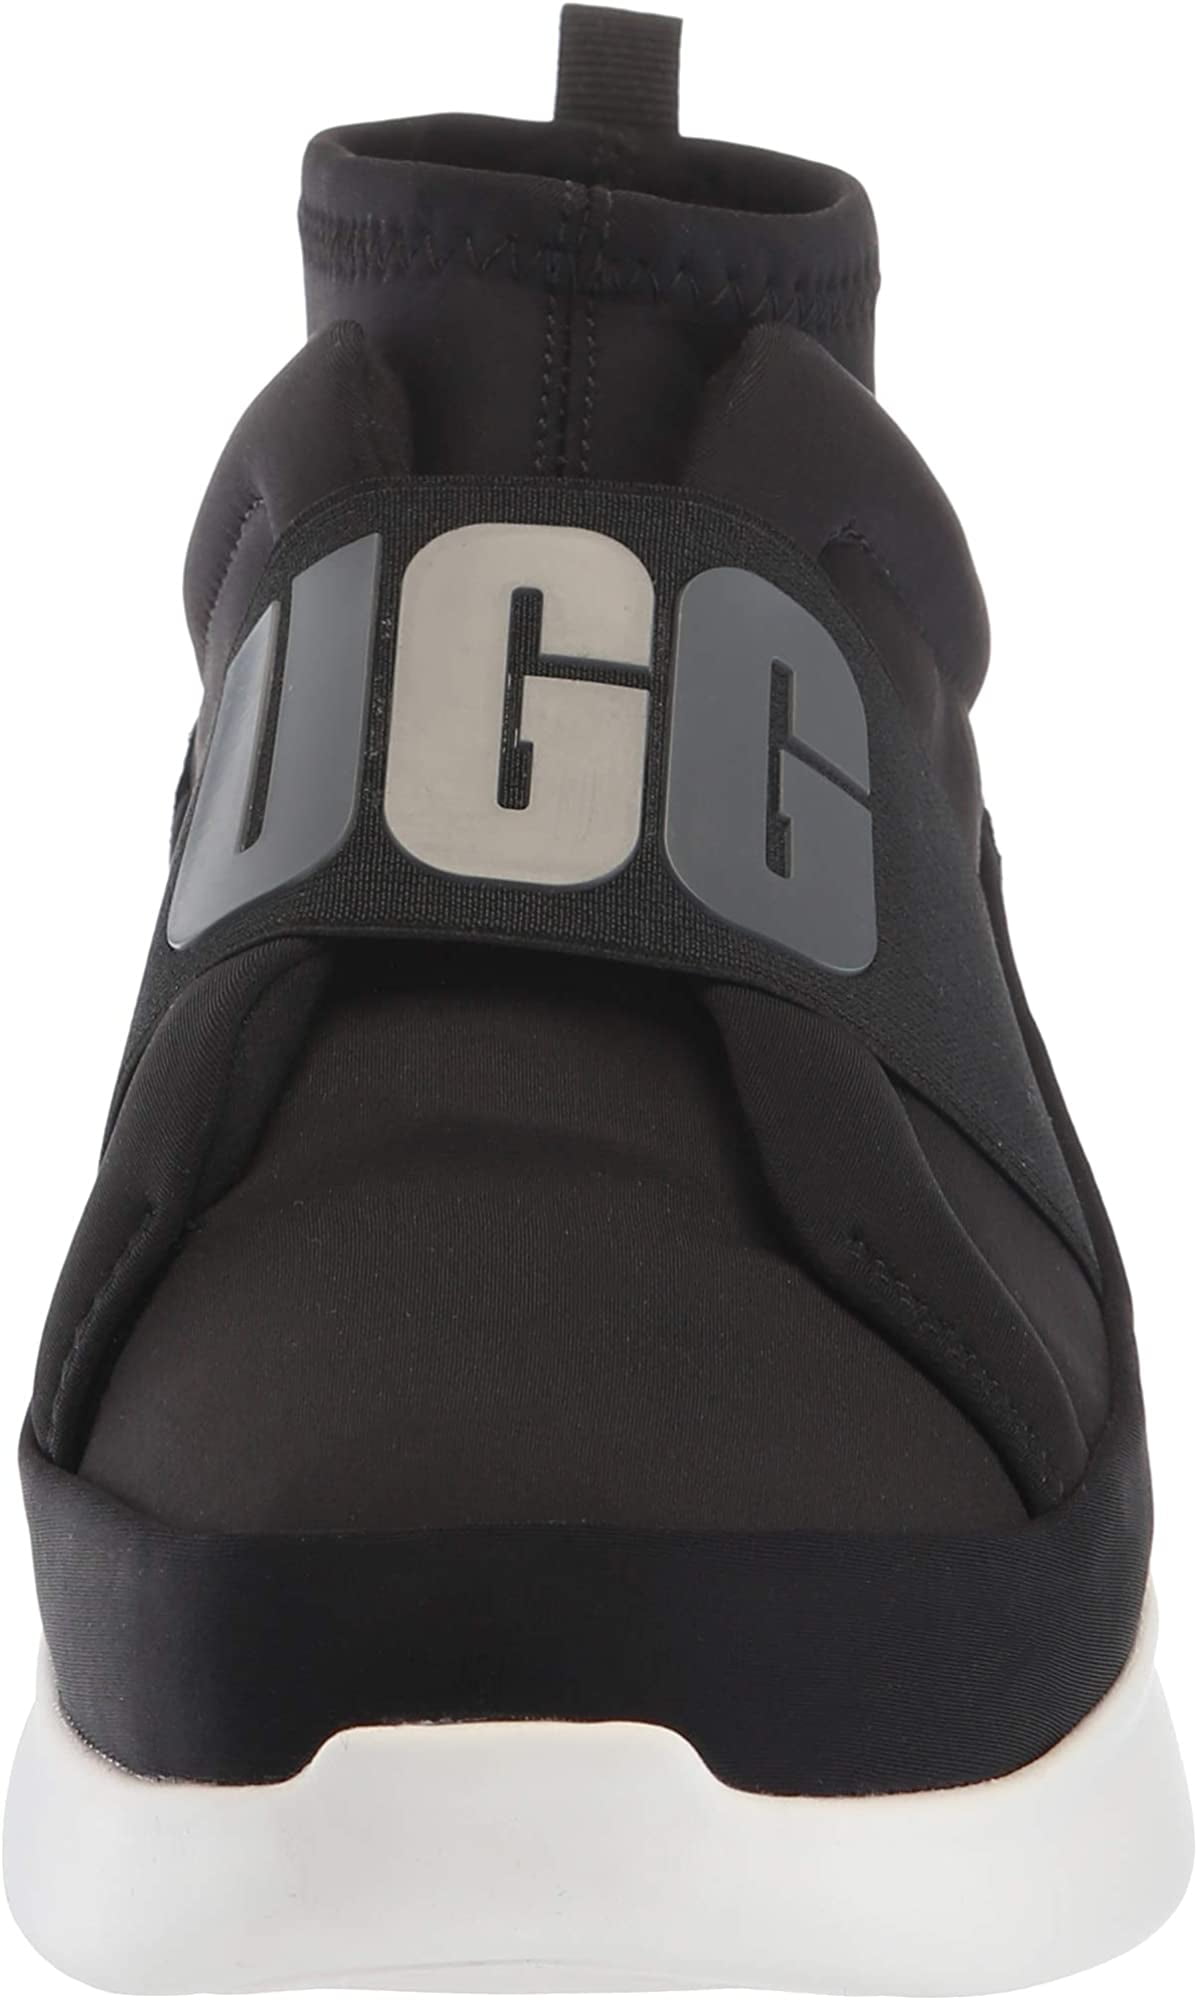 天猫国际UGG 美国直邮UGG Neutra Sneaker纽特拉系列女鞋布面logo厚底1095097 459.00